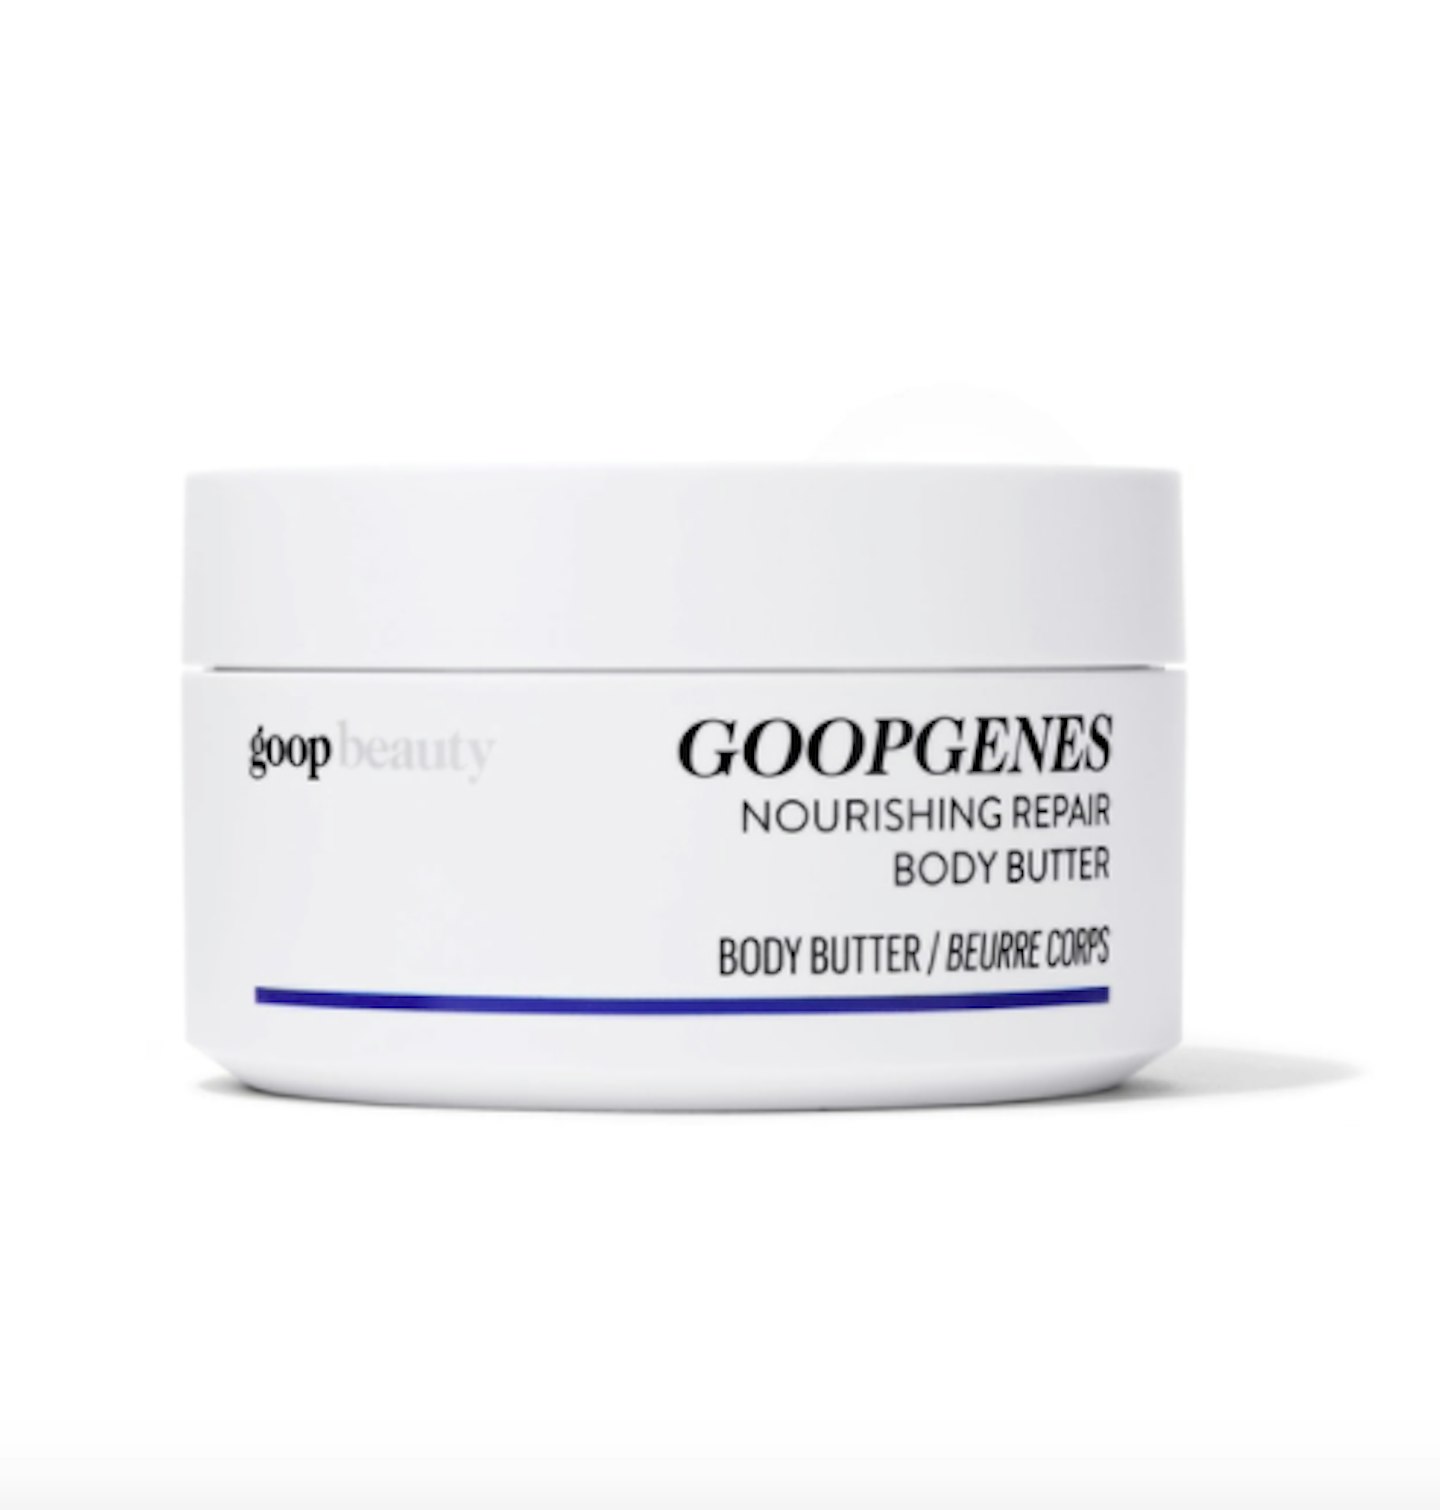 GoopGenes Body Butter